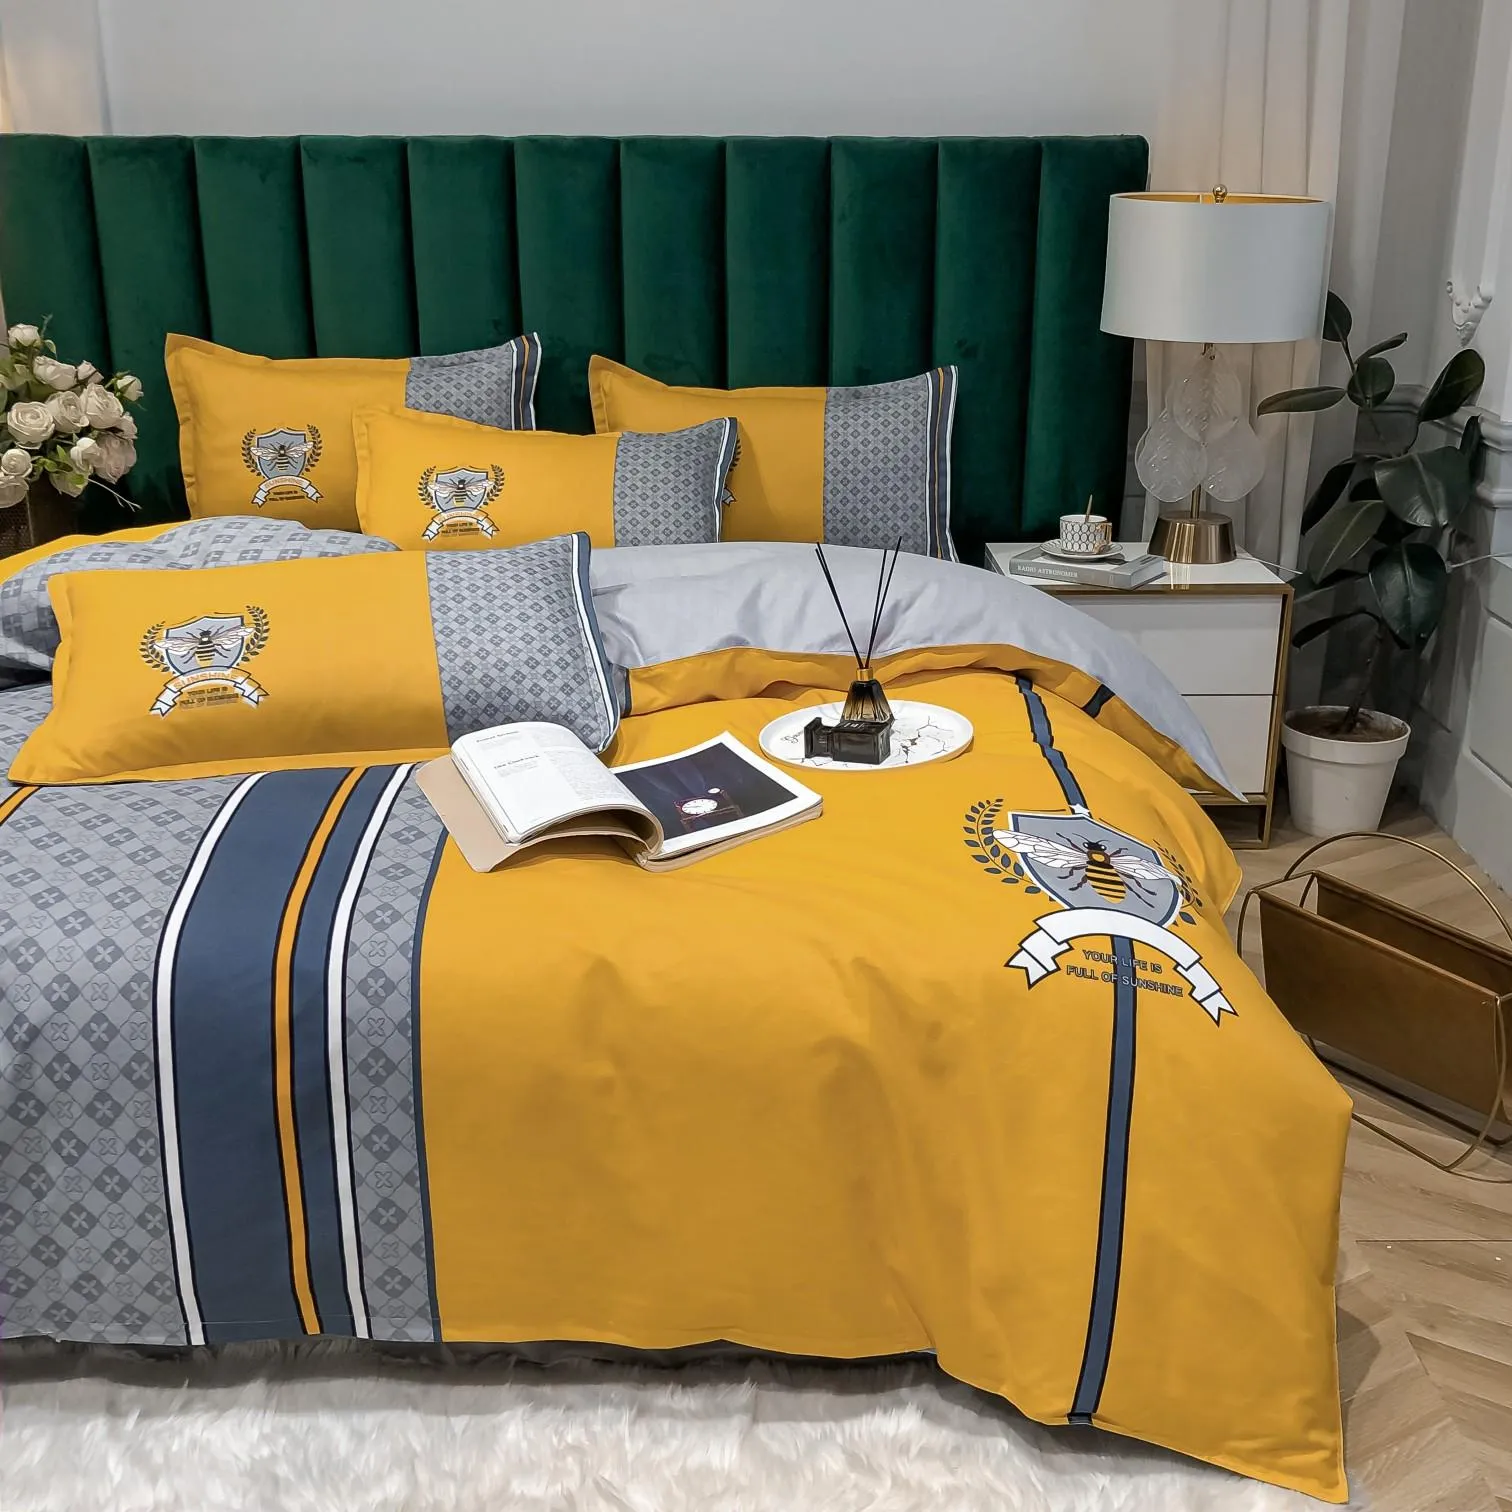 Современные дизайнерские наборы постельных принадлежностей покрывают модные высококачественные хлопковые размеры роскошные листы, абоненты 251111111